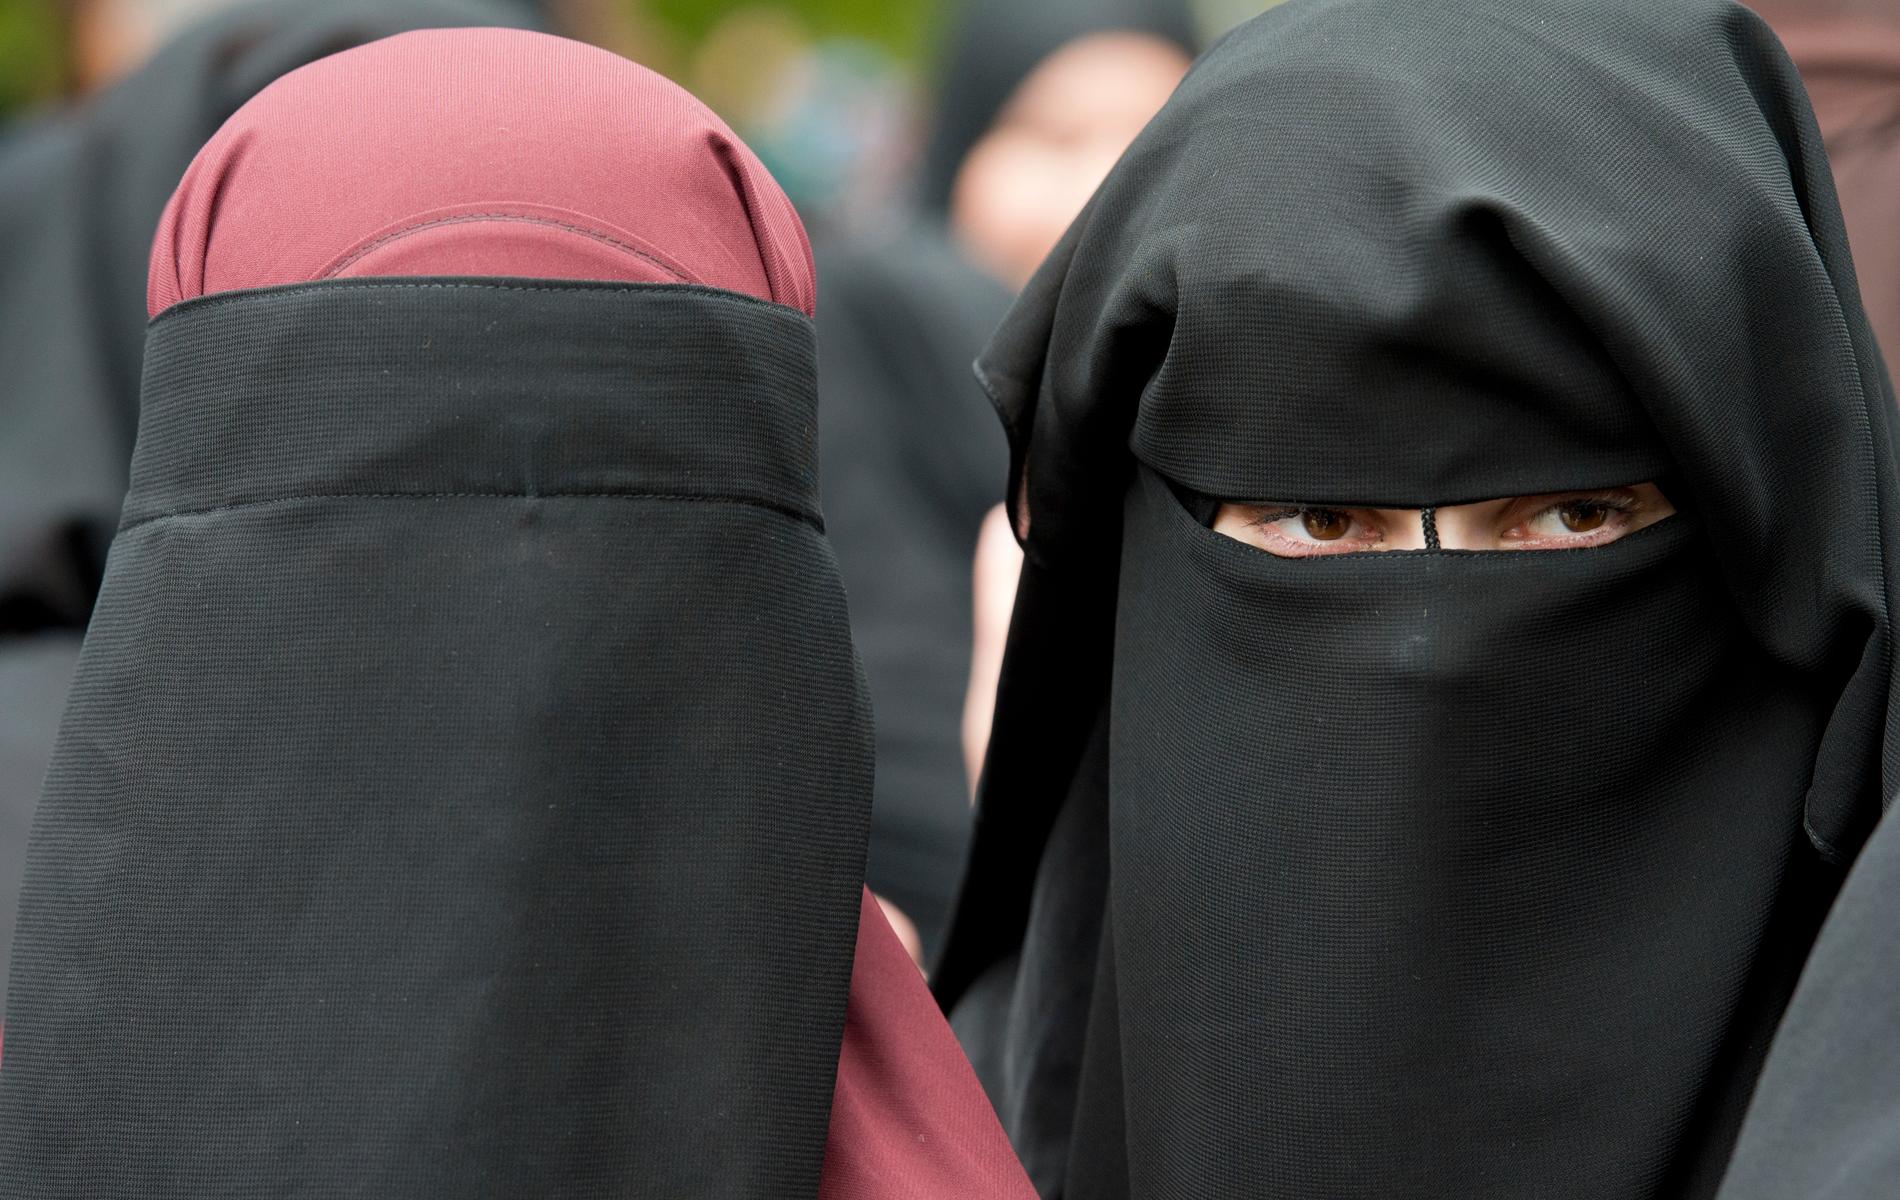 Danmark har en politisk majoritet för ett burkaförbud. Arkivbild från en demonstration mot ett liknande förbud i Österrike 2014.